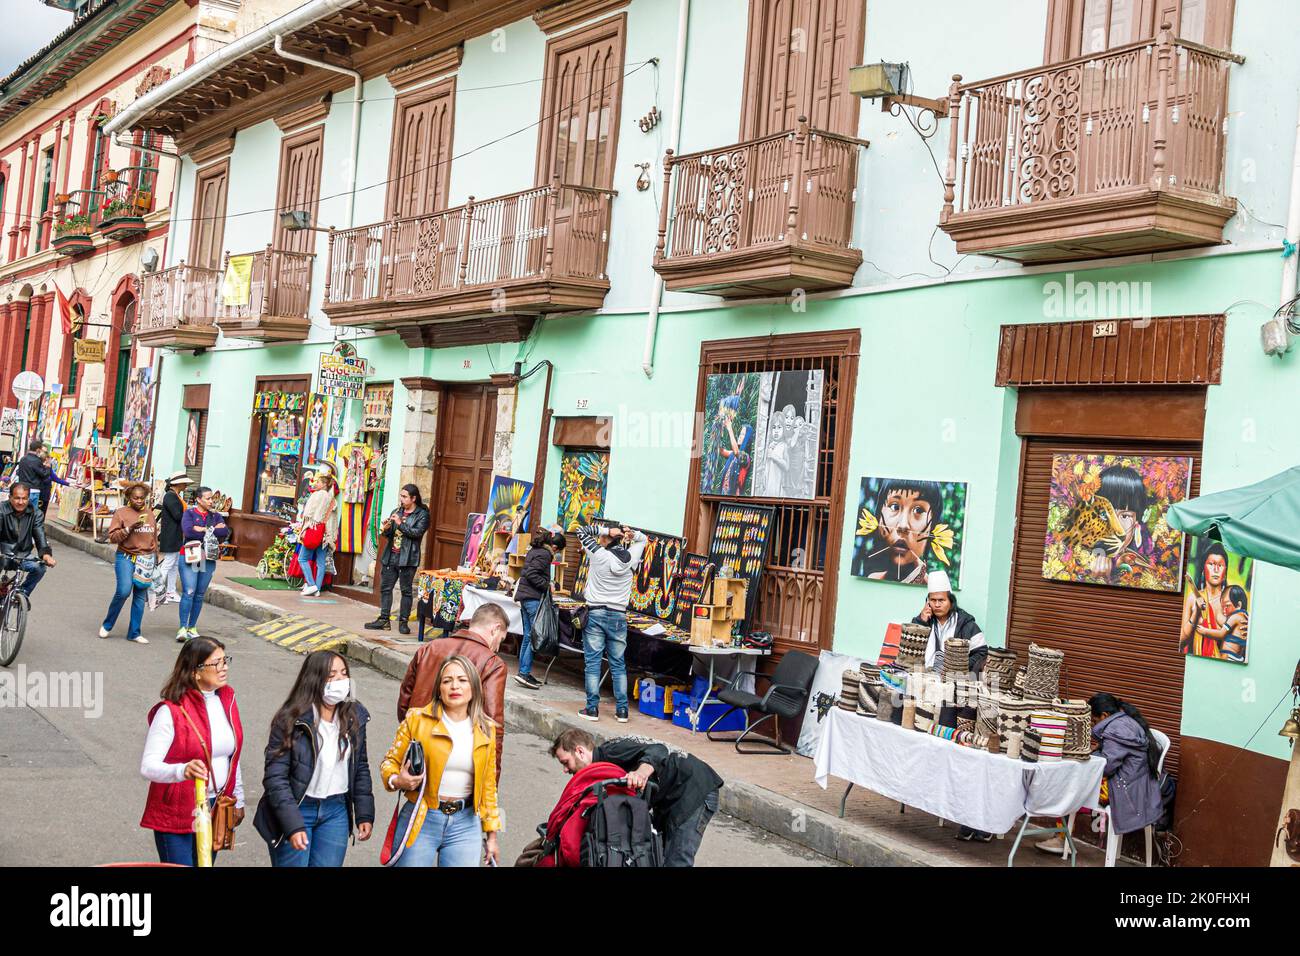 Bogotá Colombia, La Candelaria Centro Histórico centro histórico centro de la ciudad vieja calle 11, tiendas negocios negocios tiendas mercado mar Foto de stock